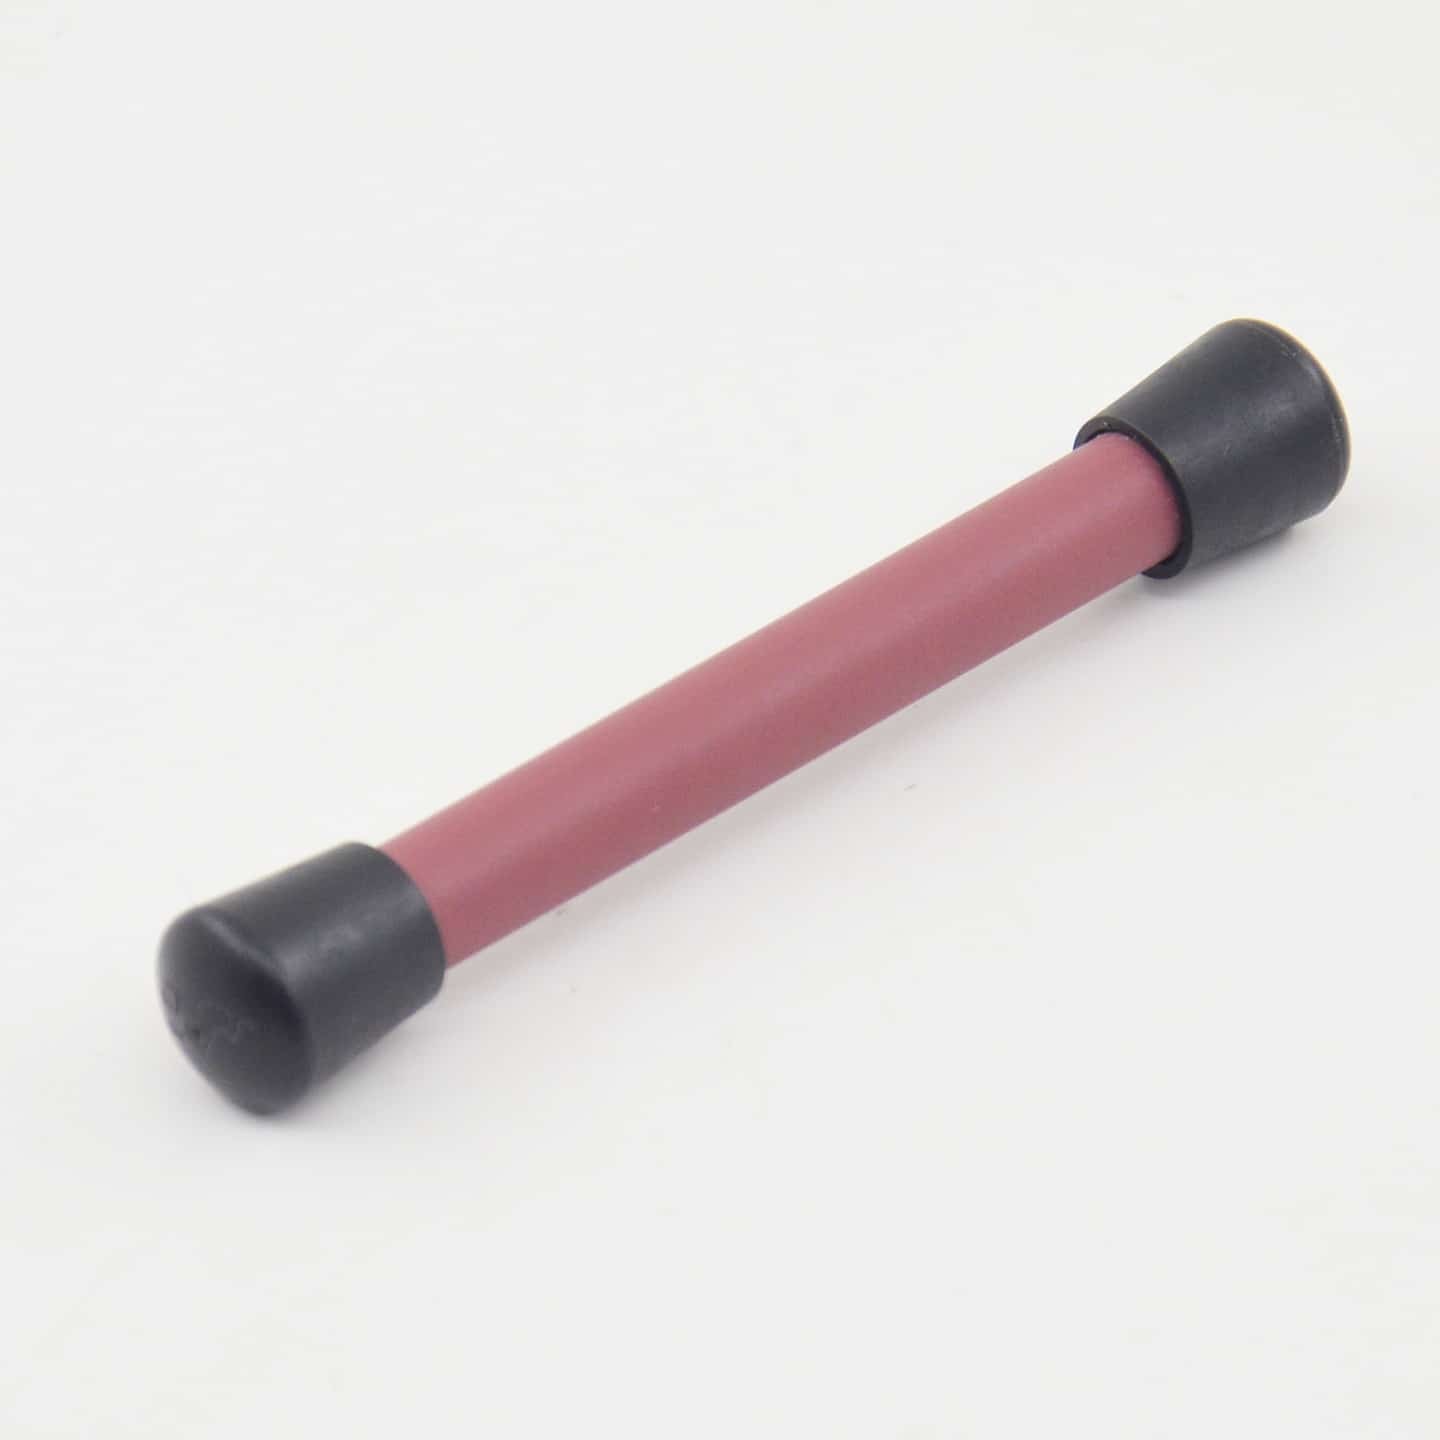 Карманная точилка из рубиновой керамики, 105х10 мм, SKATA карманная точилка guided field sharpener